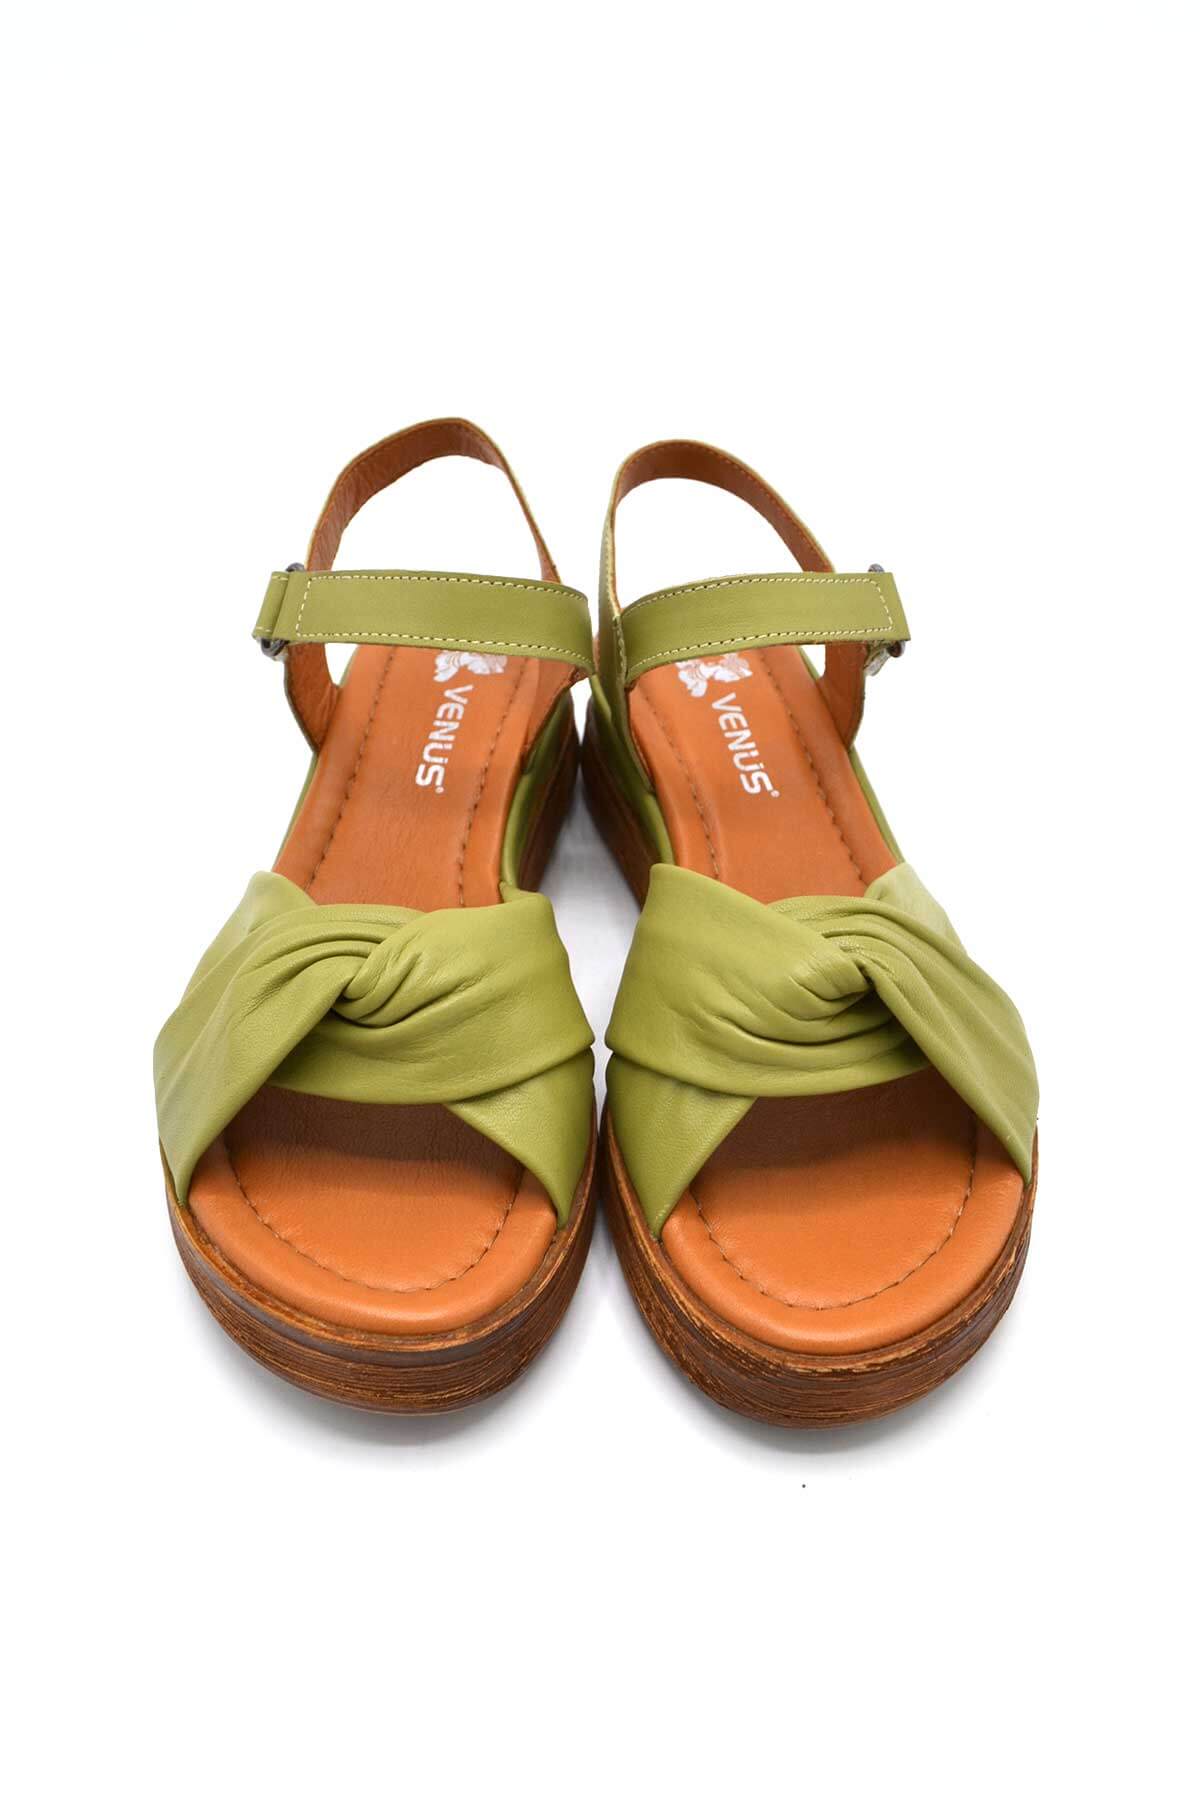 Kadın Comfort Deri Sandalet Yeşil 2216403Y - Thumbnail